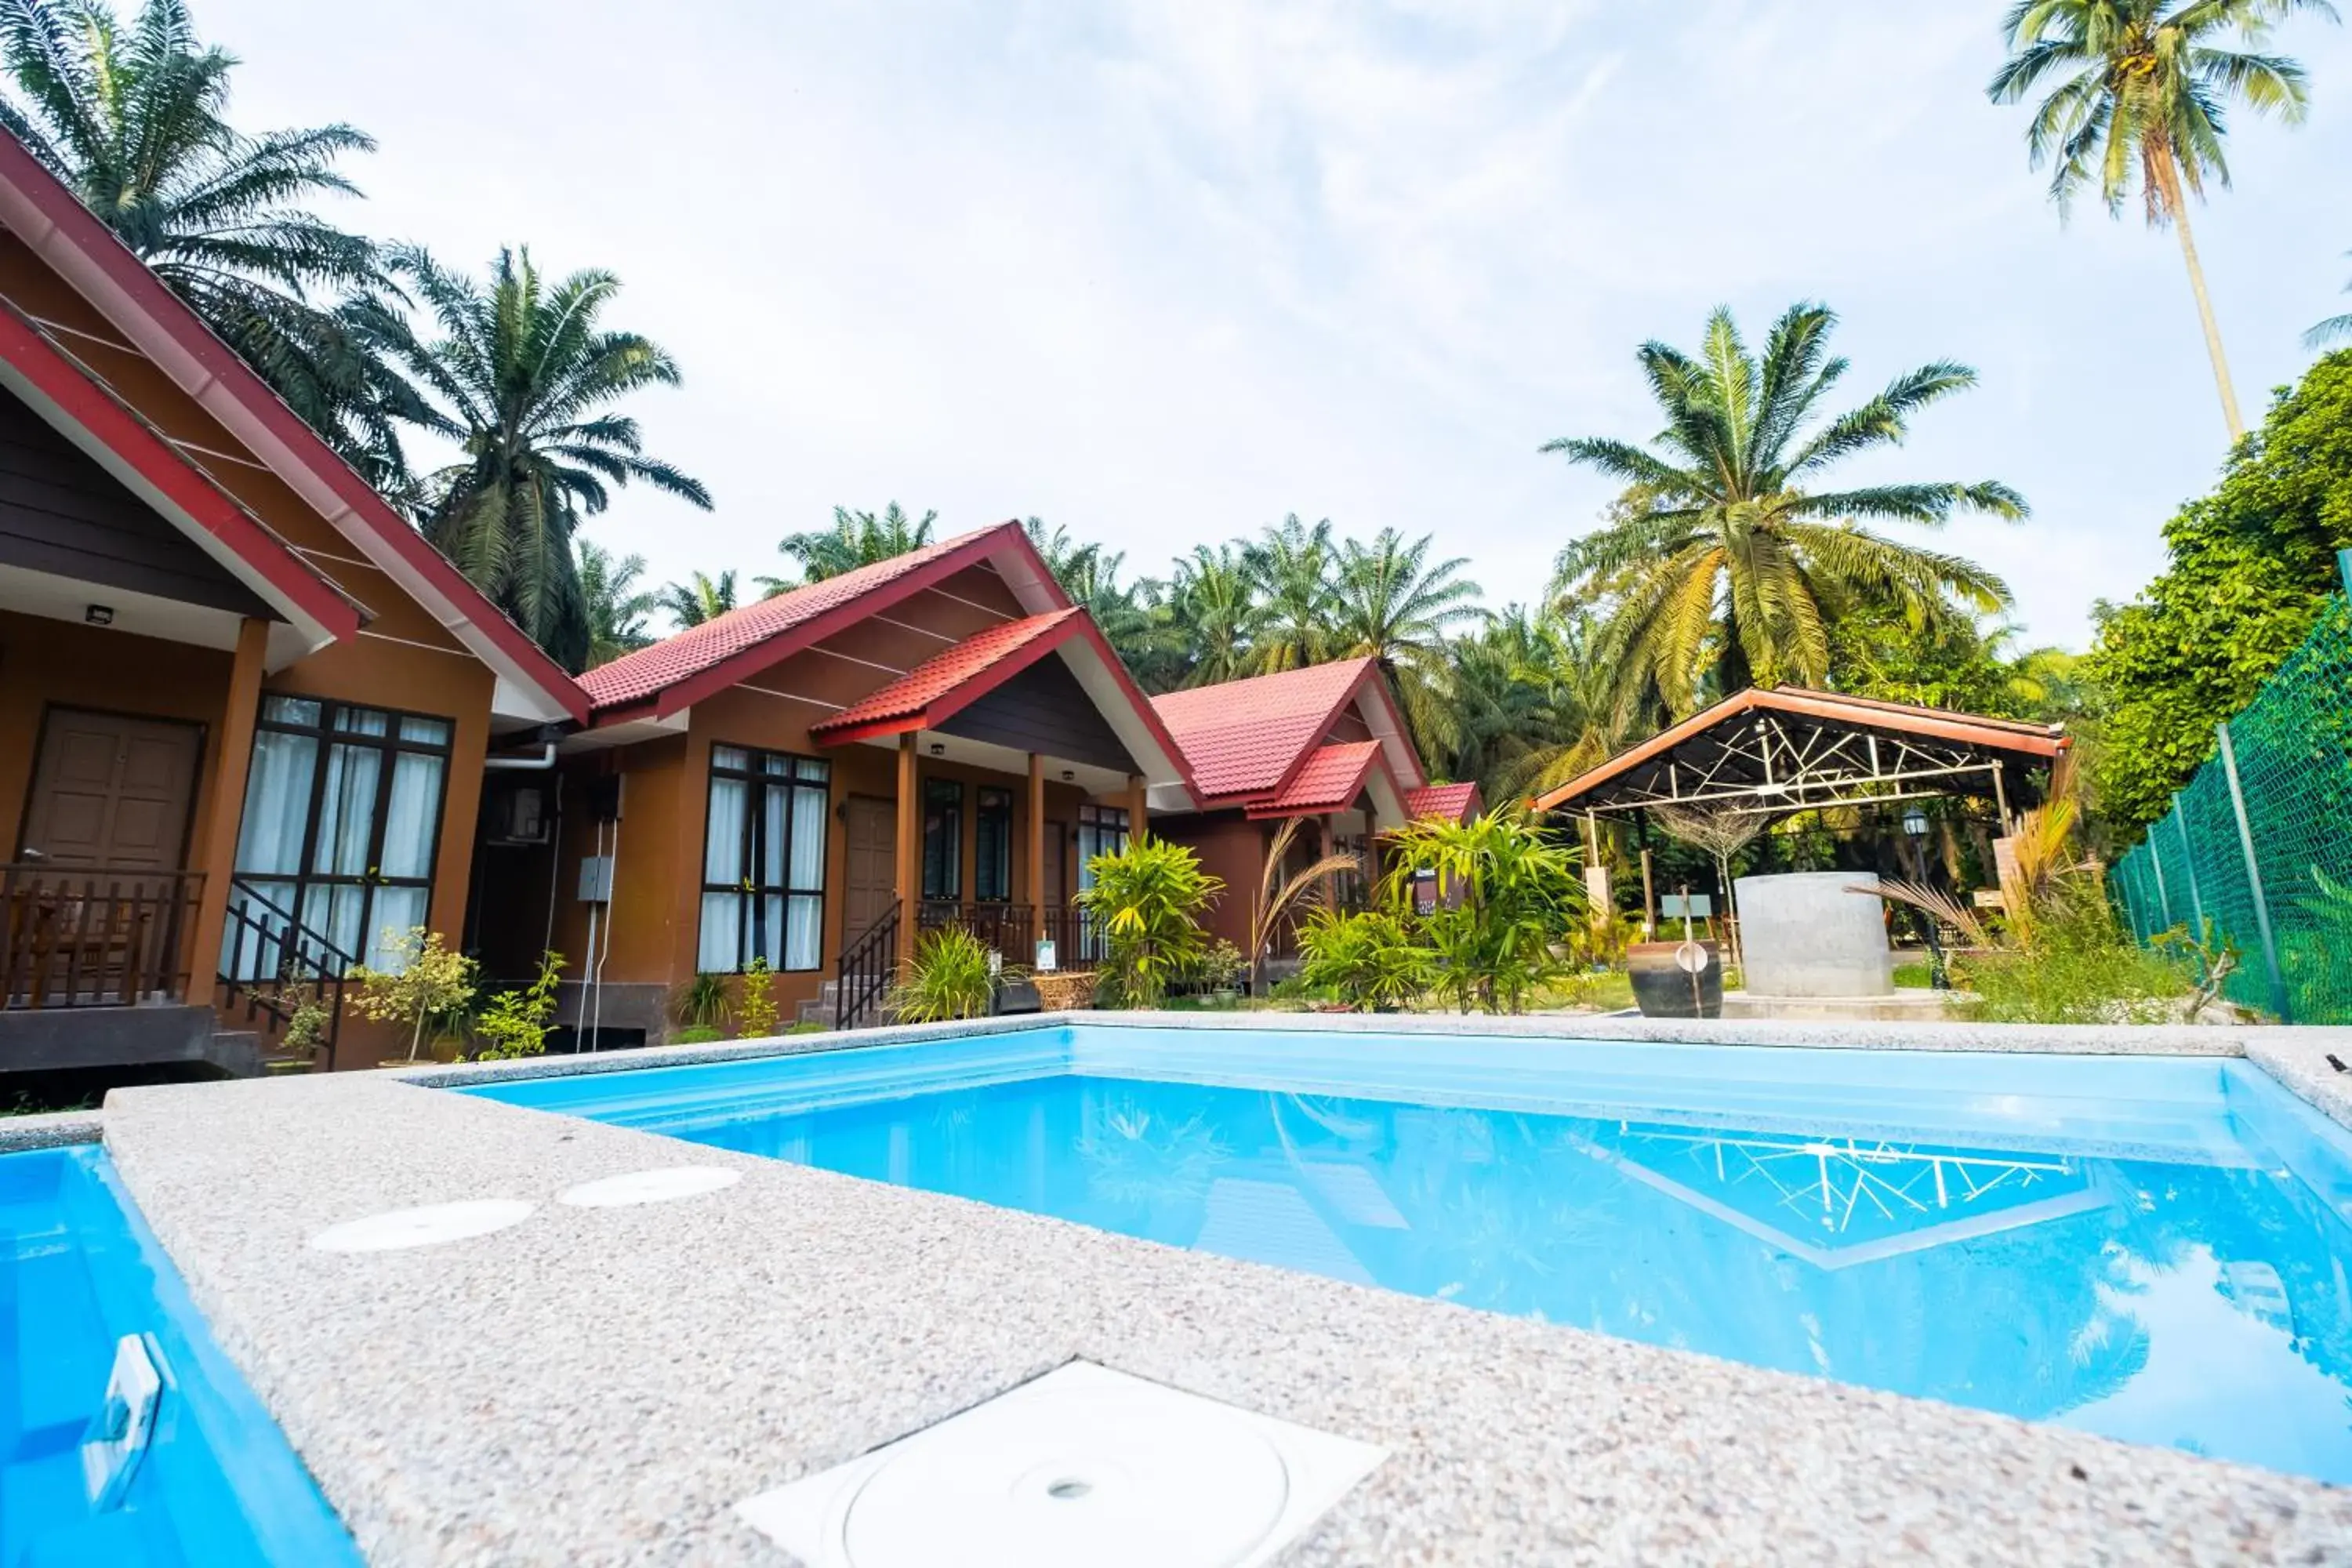 Swimming Pool in Cinta Abadi Resort